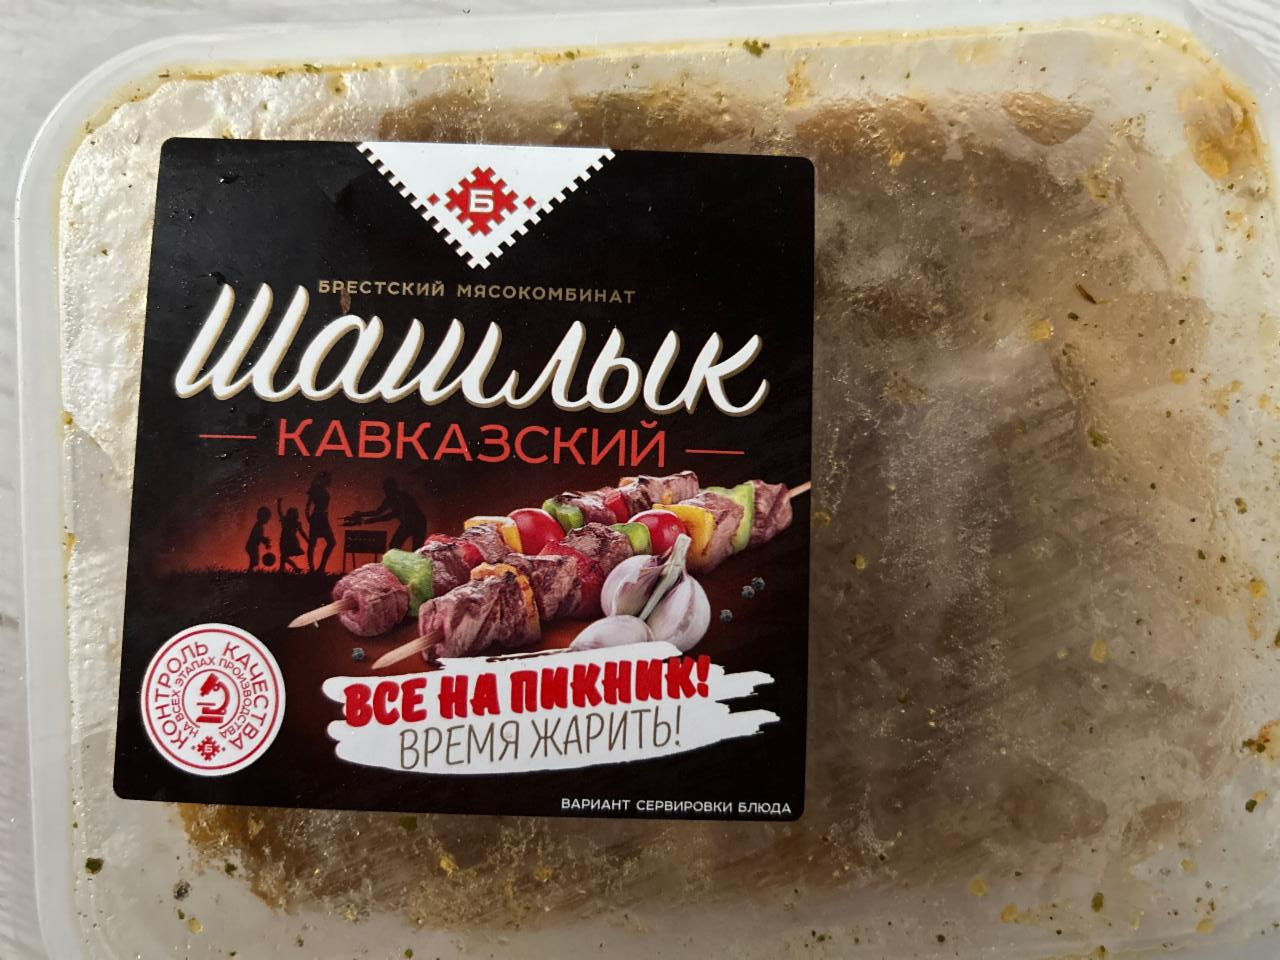 Фото - шашлык кавказский Брестский мясокомбинат